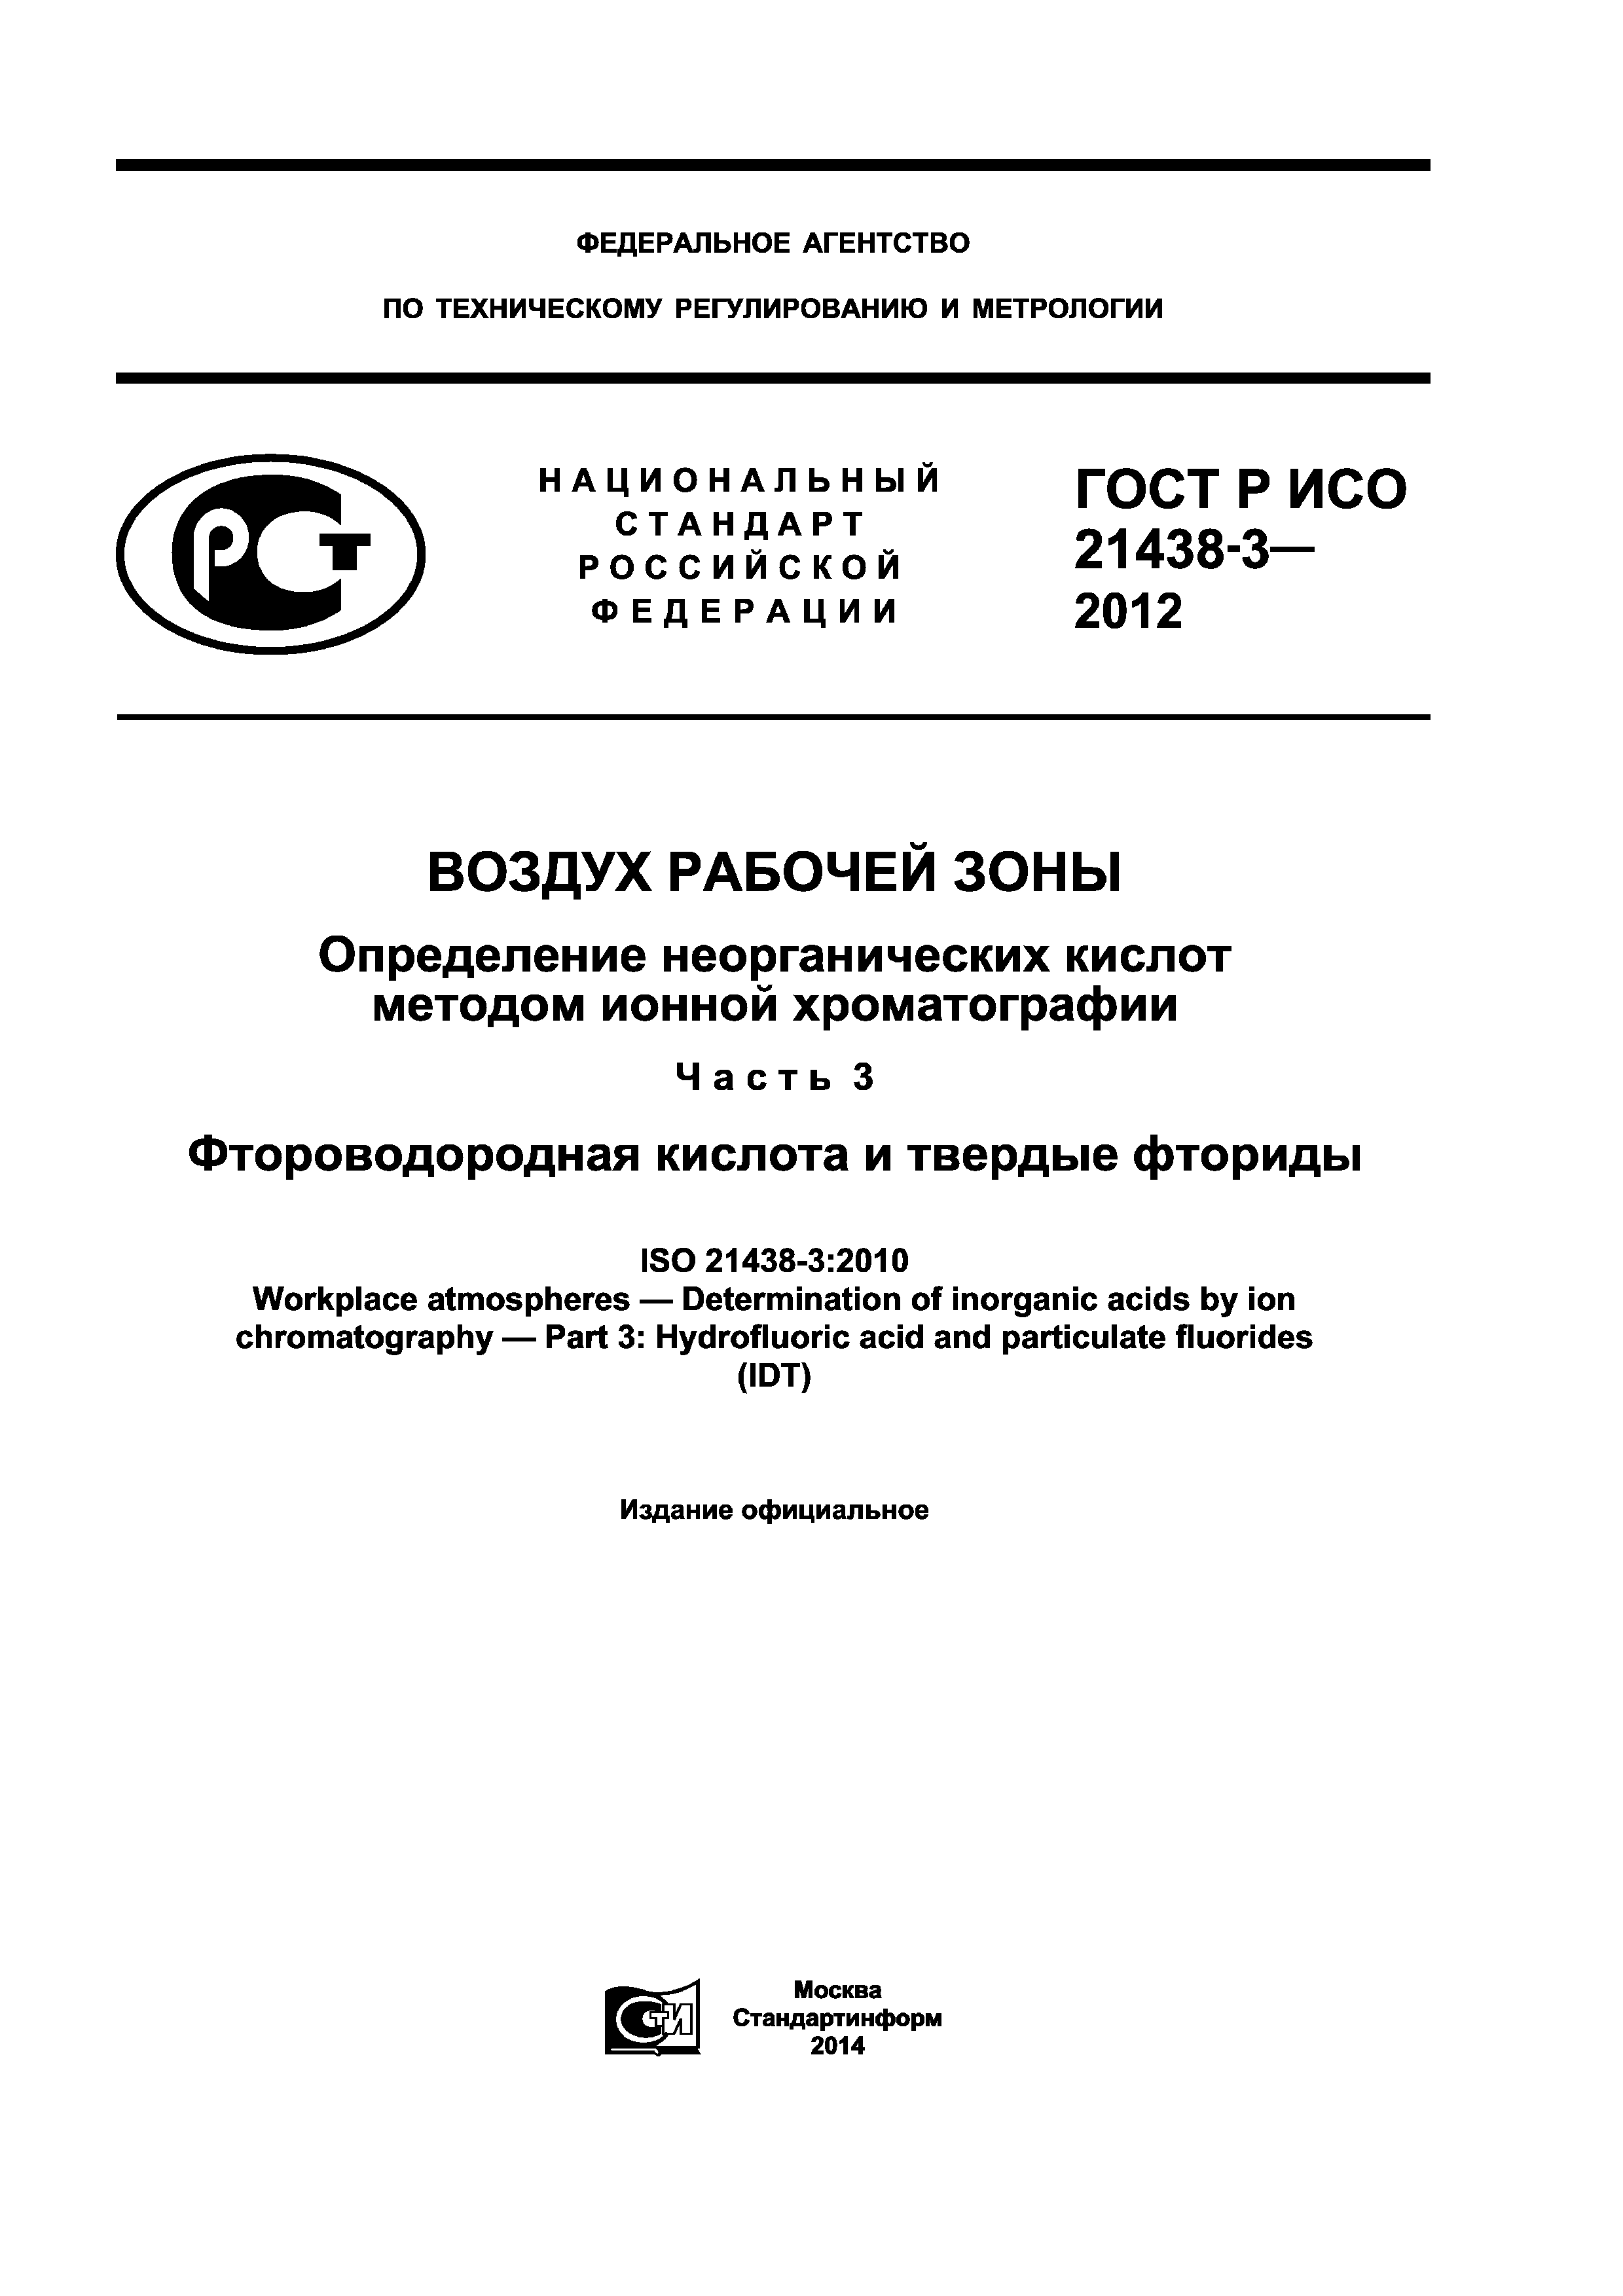 ГОСТ Р ИСО 21438-3-2012